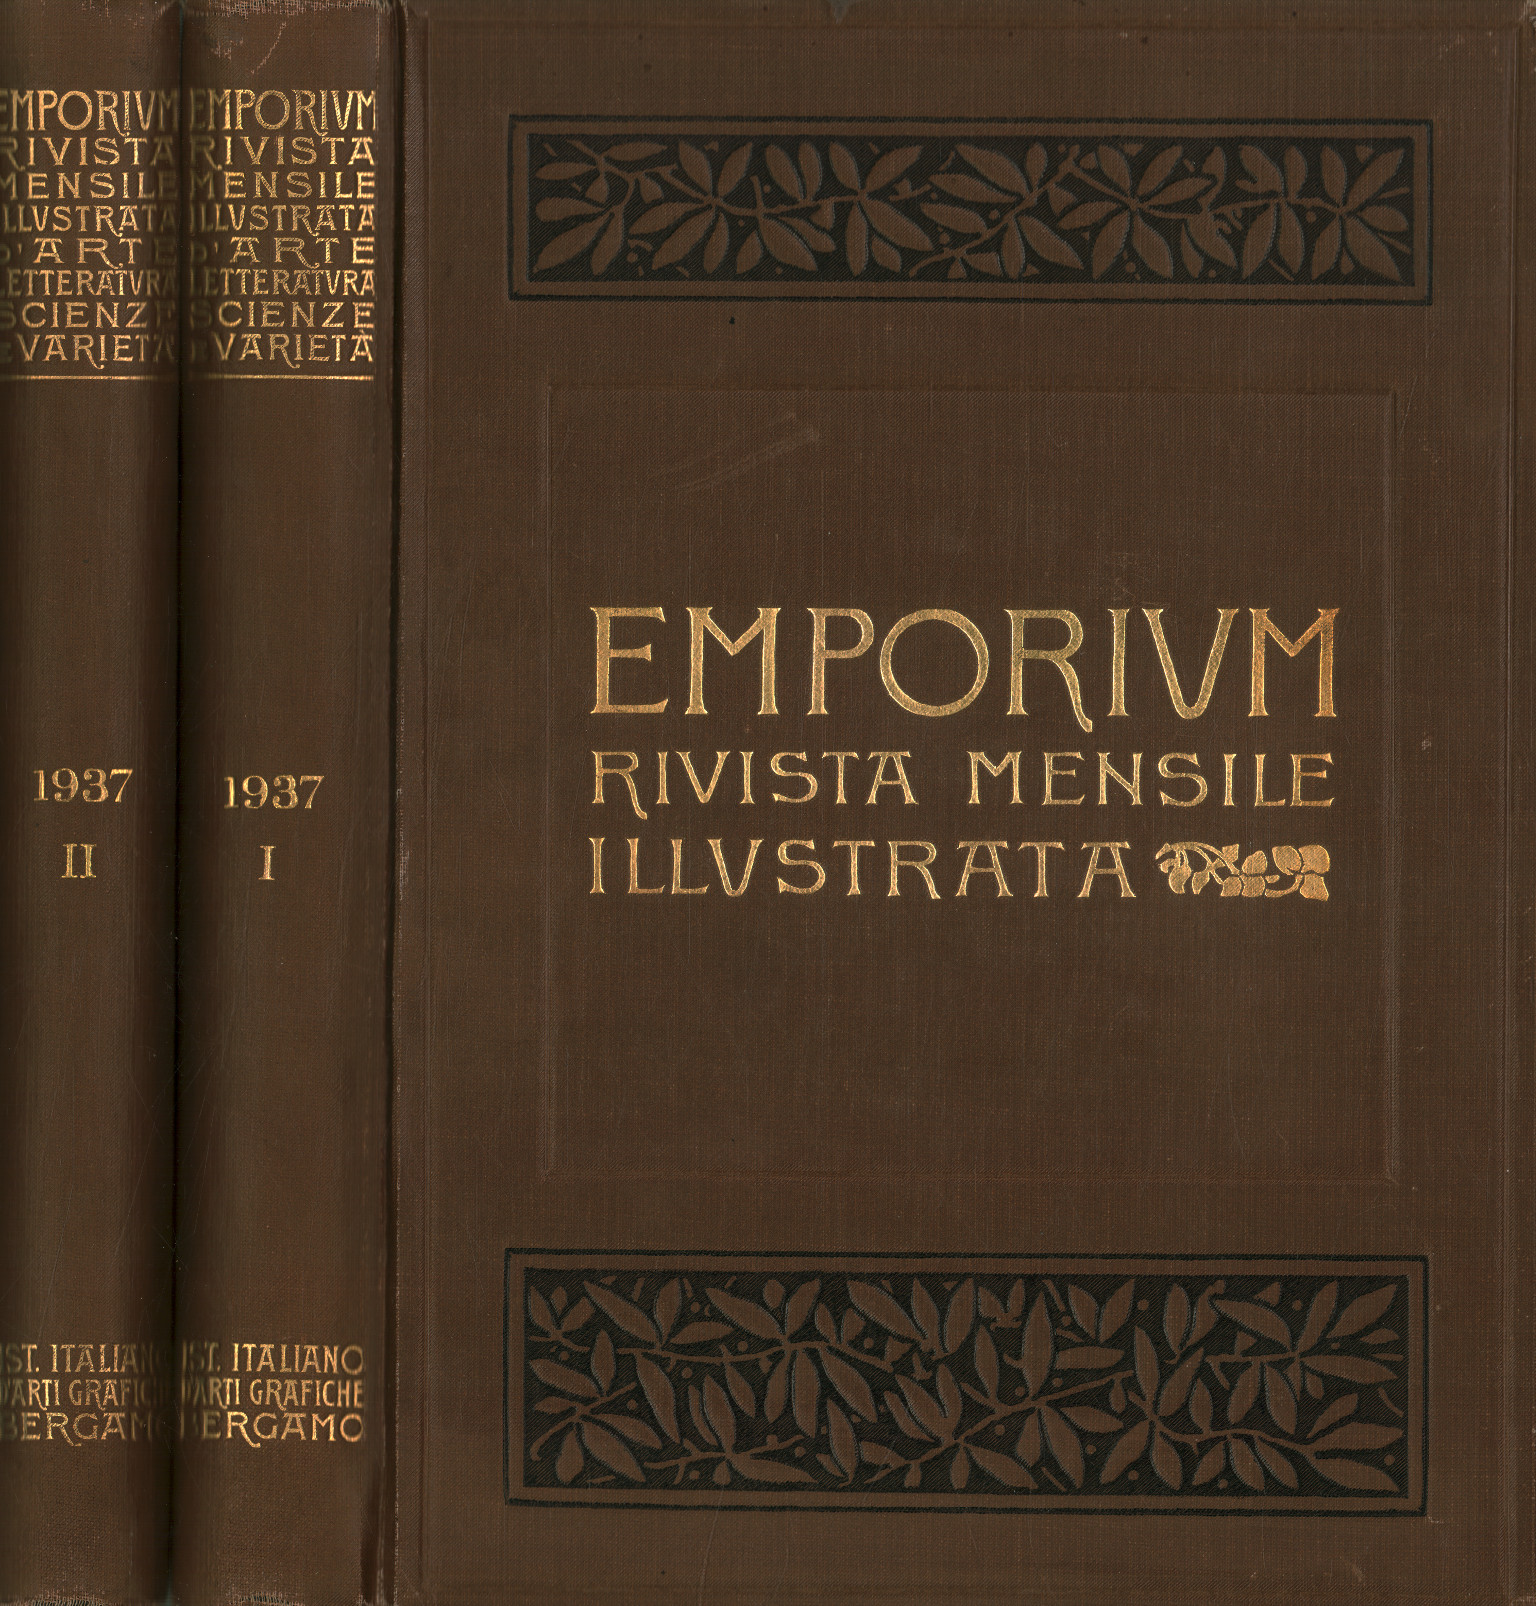 Emporium 1937 Vol LXXXXV-LXXXVI 2 volumi,Emporium. Rivista mensile illustrata d0apo